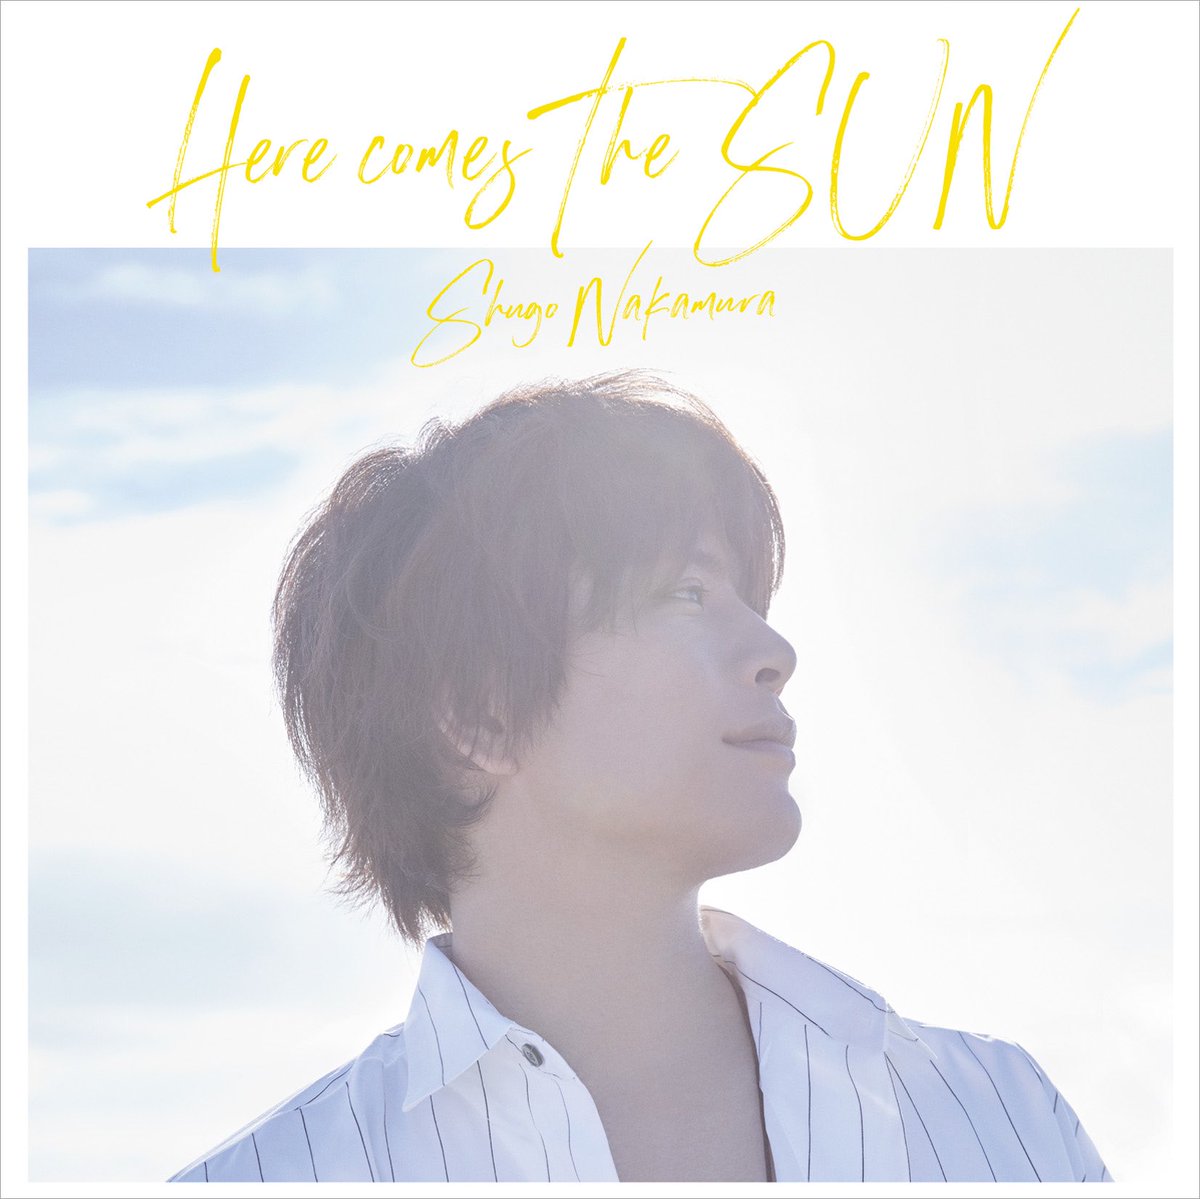 Cover art for『Shugo Nakamura - Yurayura』from the release『Here comes The SUN』